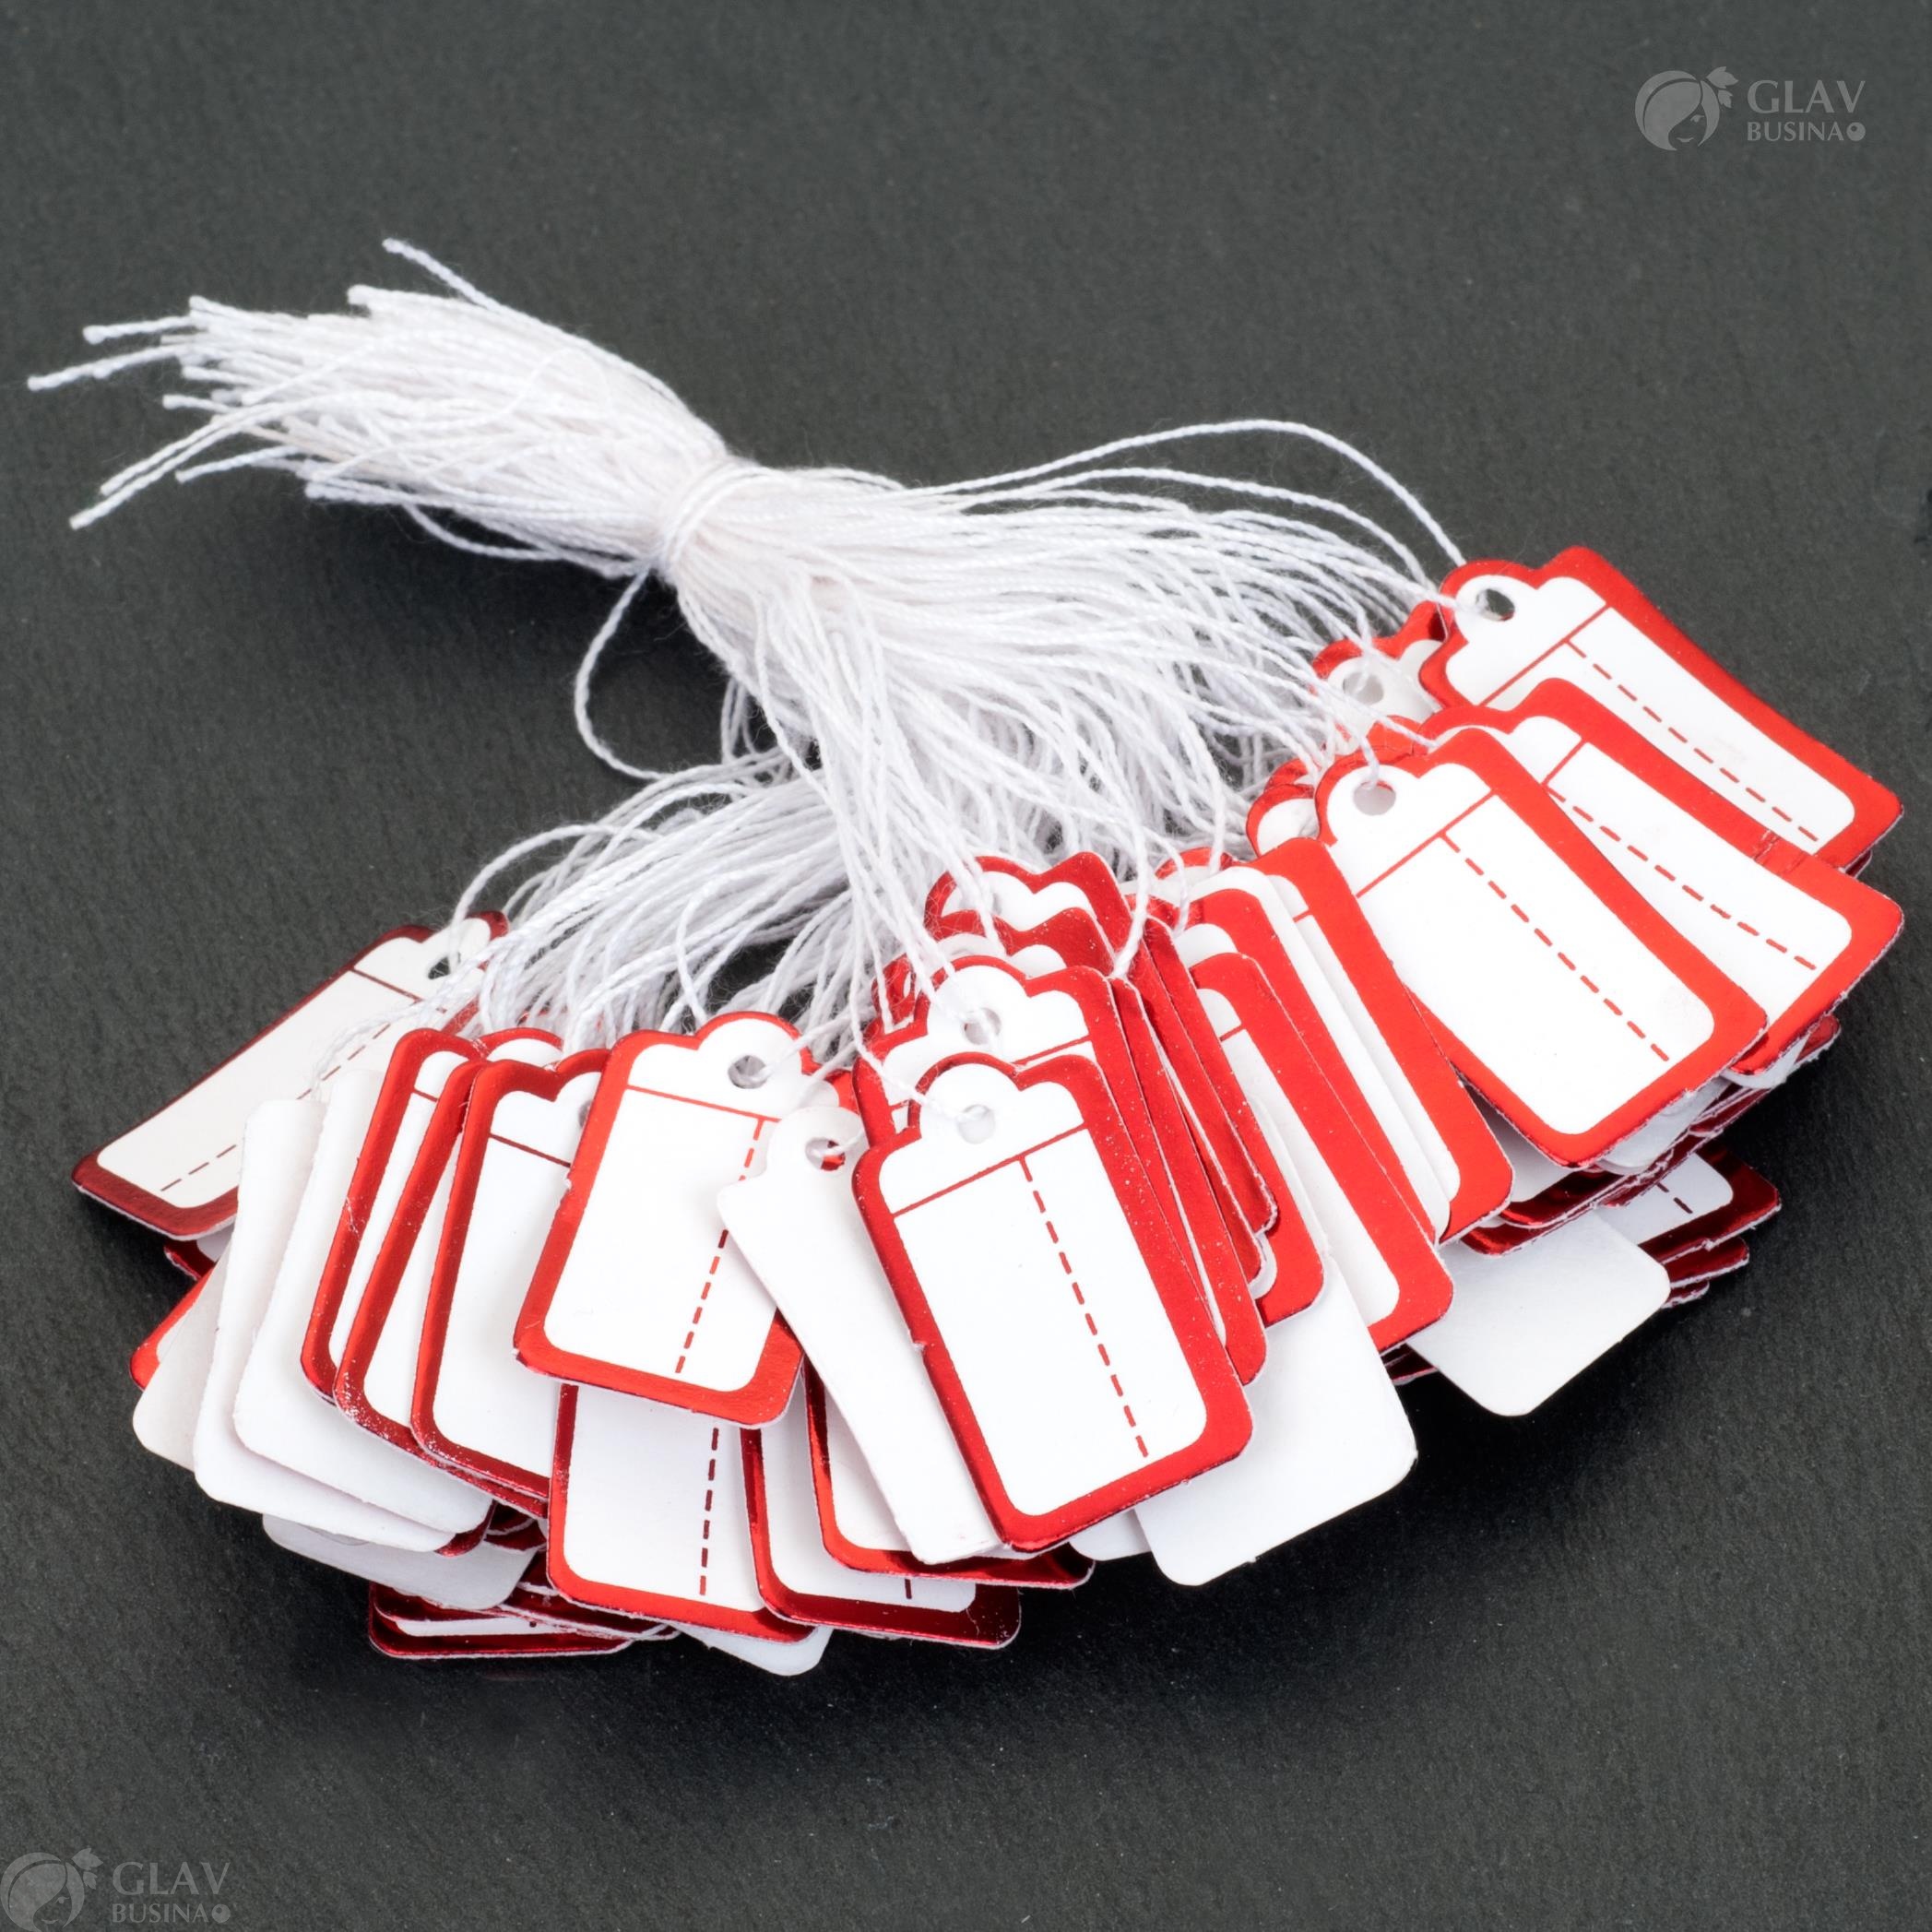 Ценники картонные для украшений с красной каймой, размер 25х13 мм, прикрепленные на нитке, представлены для маркировки цен.